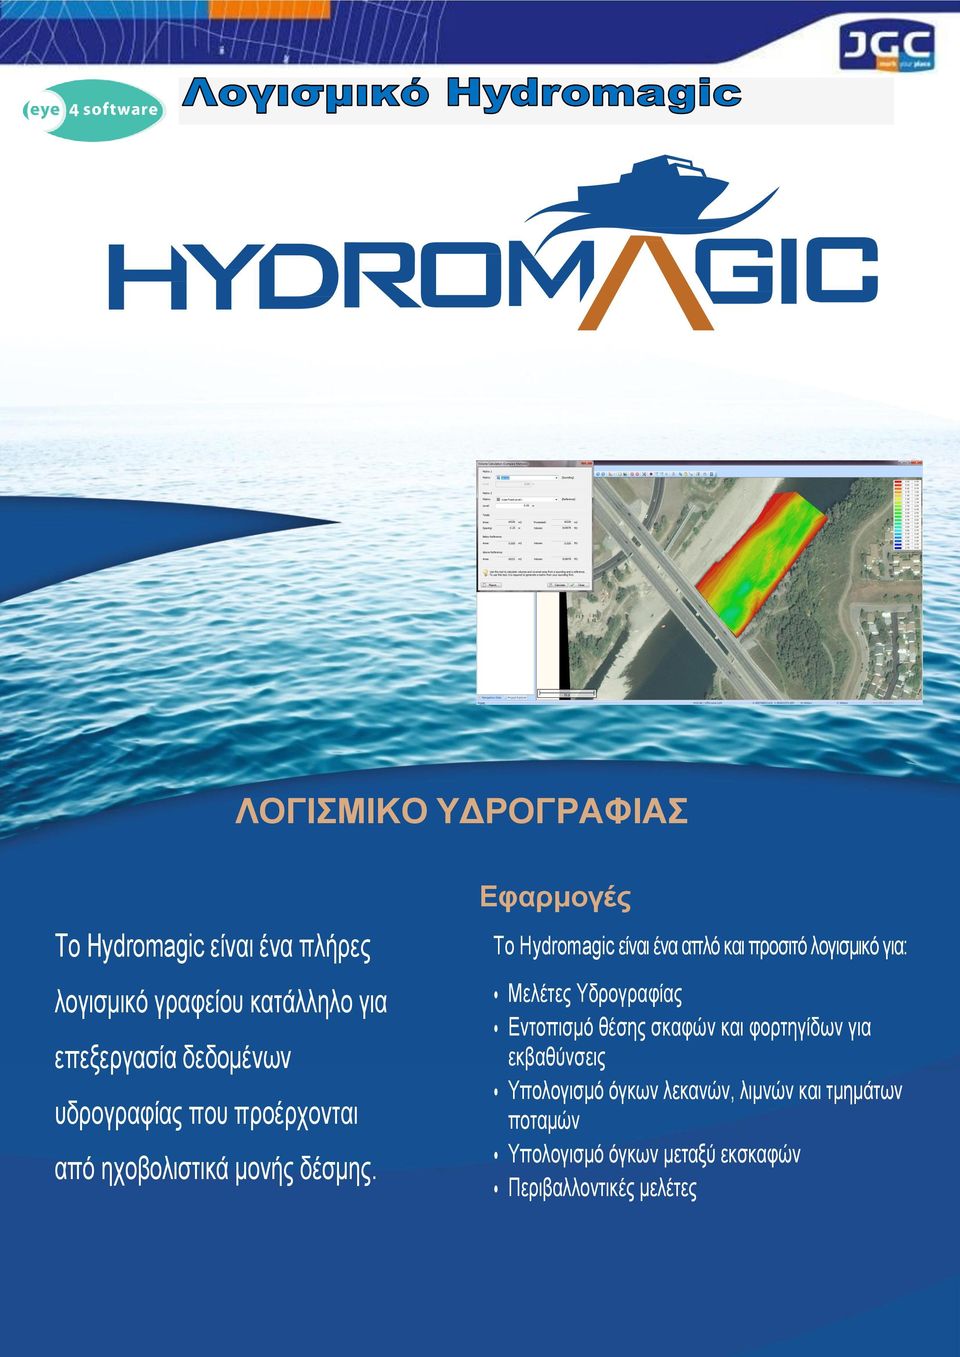 Εφαρμογές Το Hydromagic είναι ένα απλό και προσιτό λογισμικό για: Μελέτες Υδρογραφίας Εντοπισμό θέσης σκαφών και φορτηγίδων